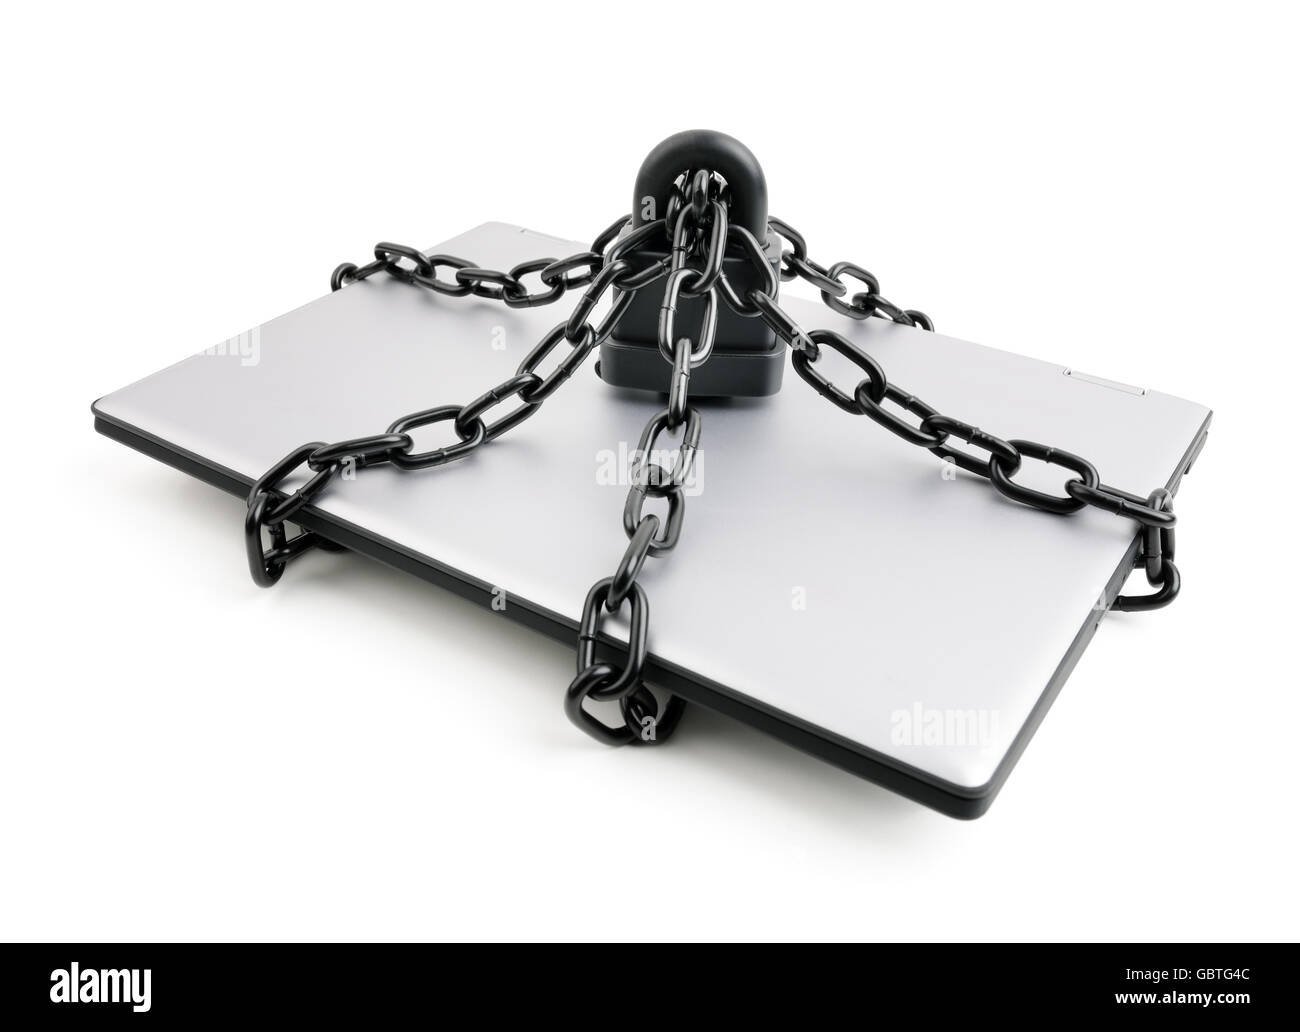 Ordinateur et internet security concept laptop avec chaînes et cadenas Banque D'Images